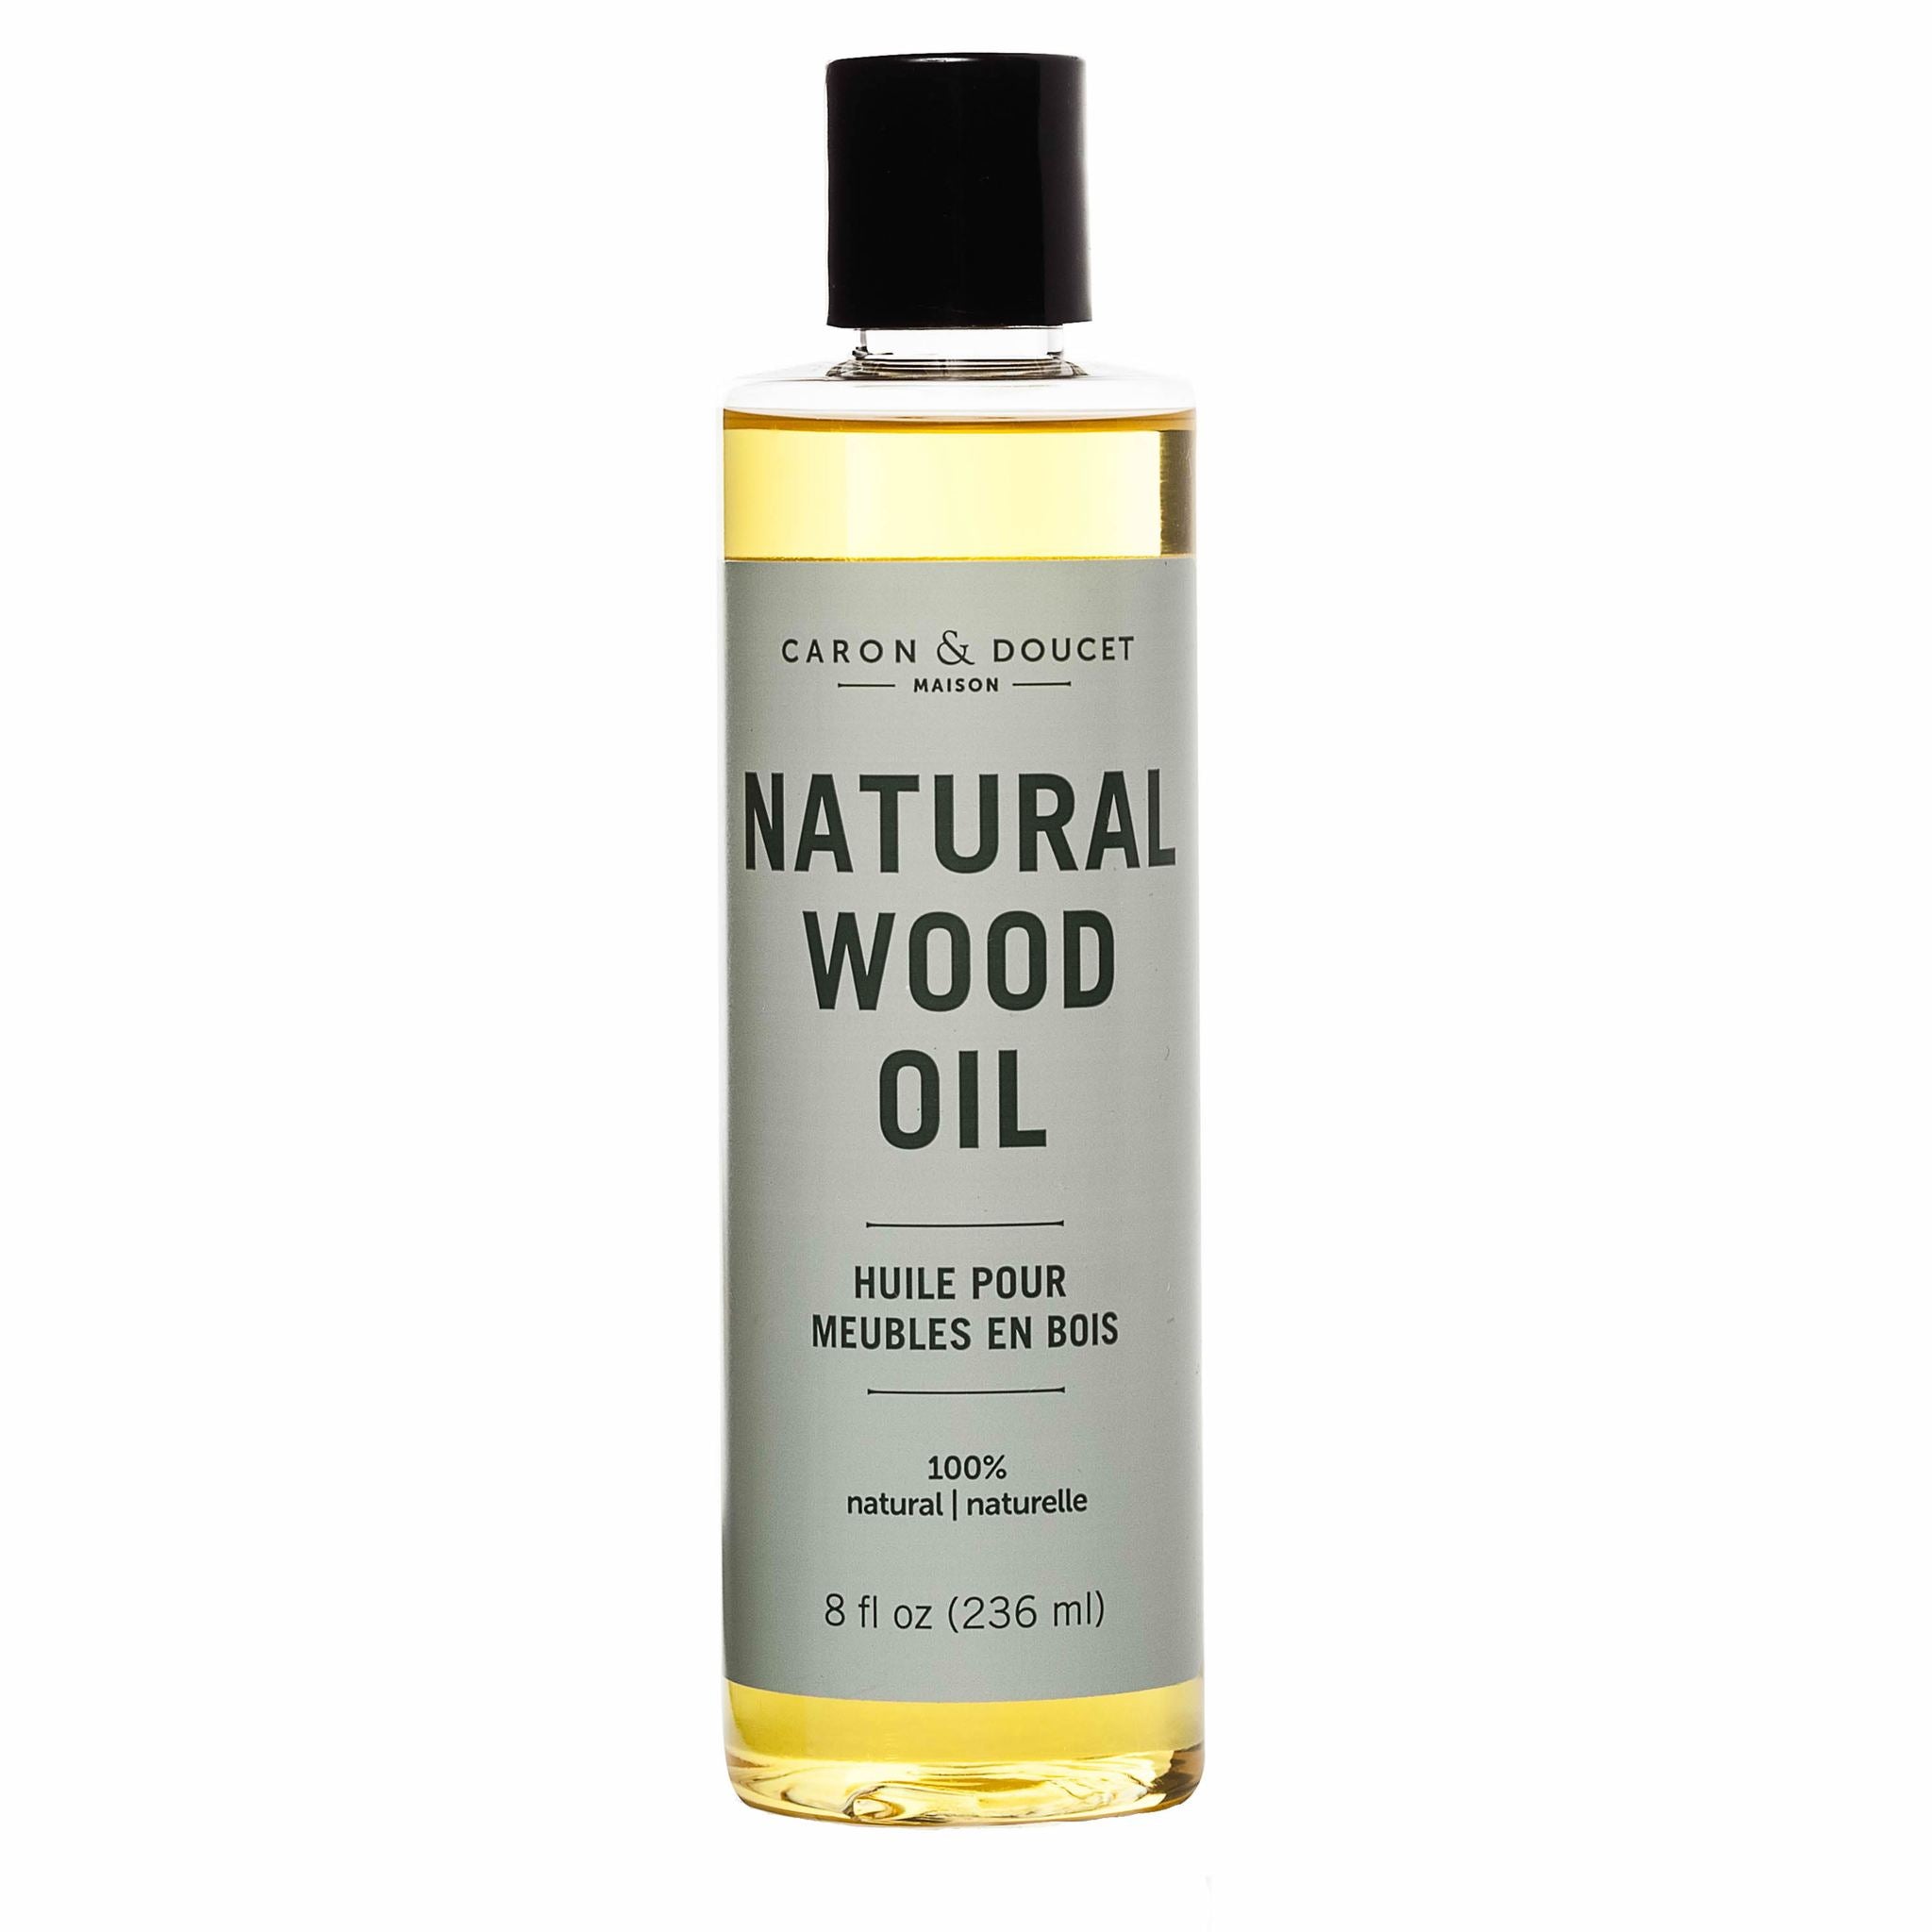 Natural Wood Oil